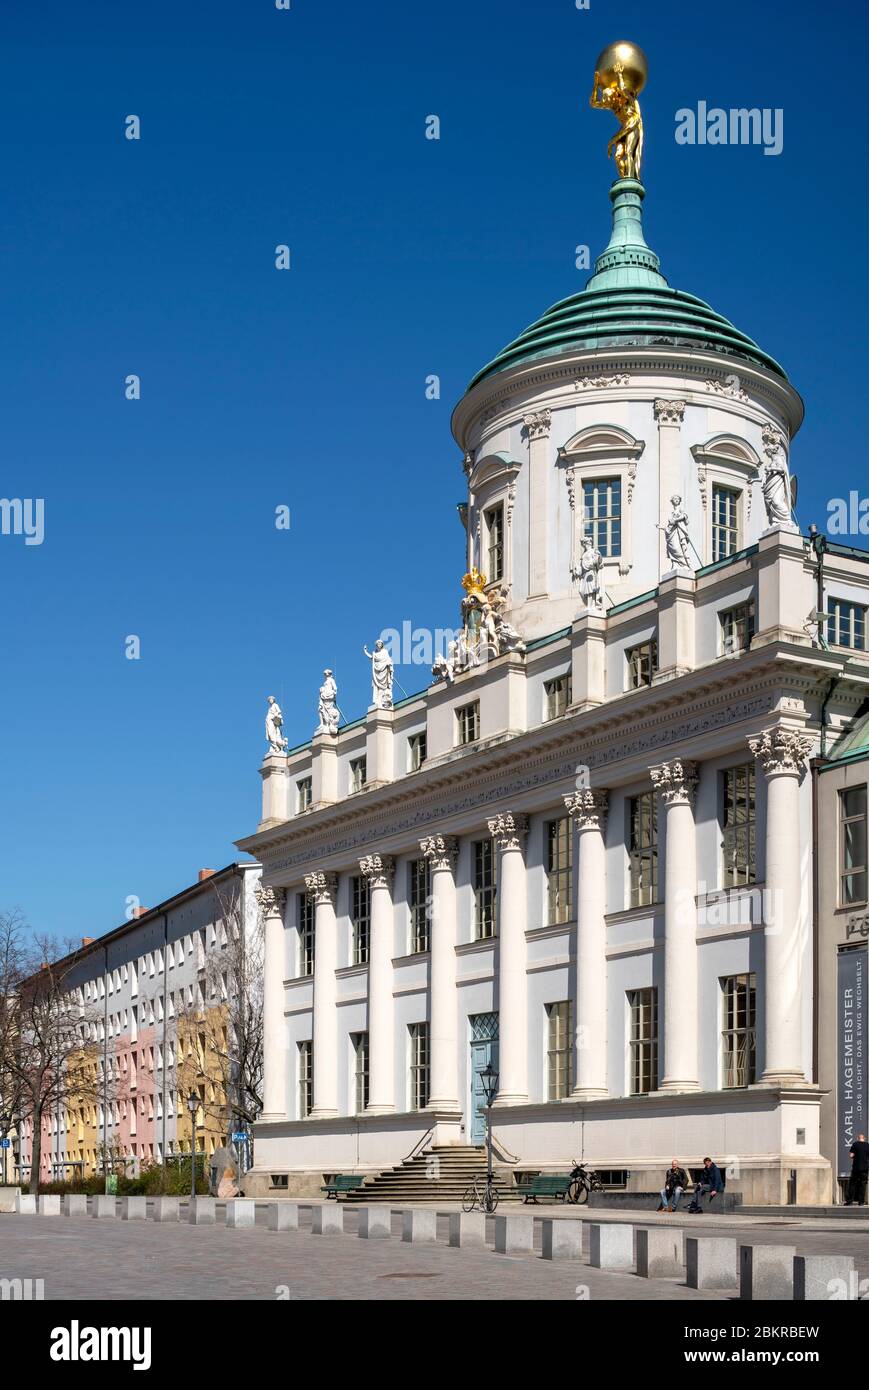 Potsdam, rekonstruierter Alter Markt, Altes Rathaus und DDR-Plattenbauten Foto Stock